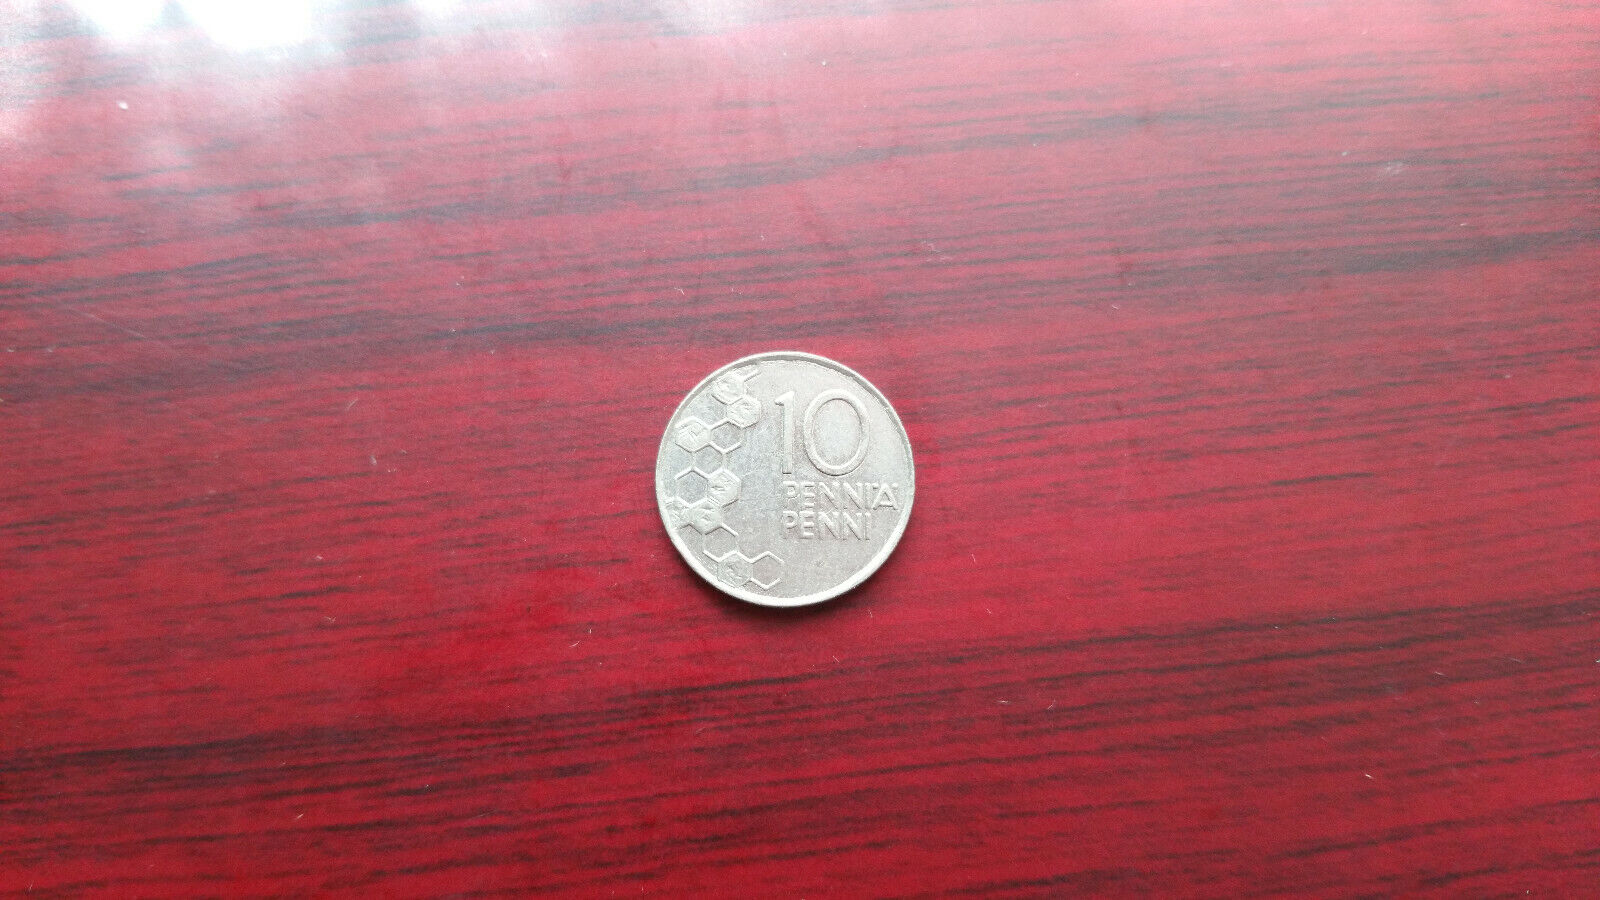 1990 and 1996 Suomi Finland 10 penni Без бренда - фотография #4